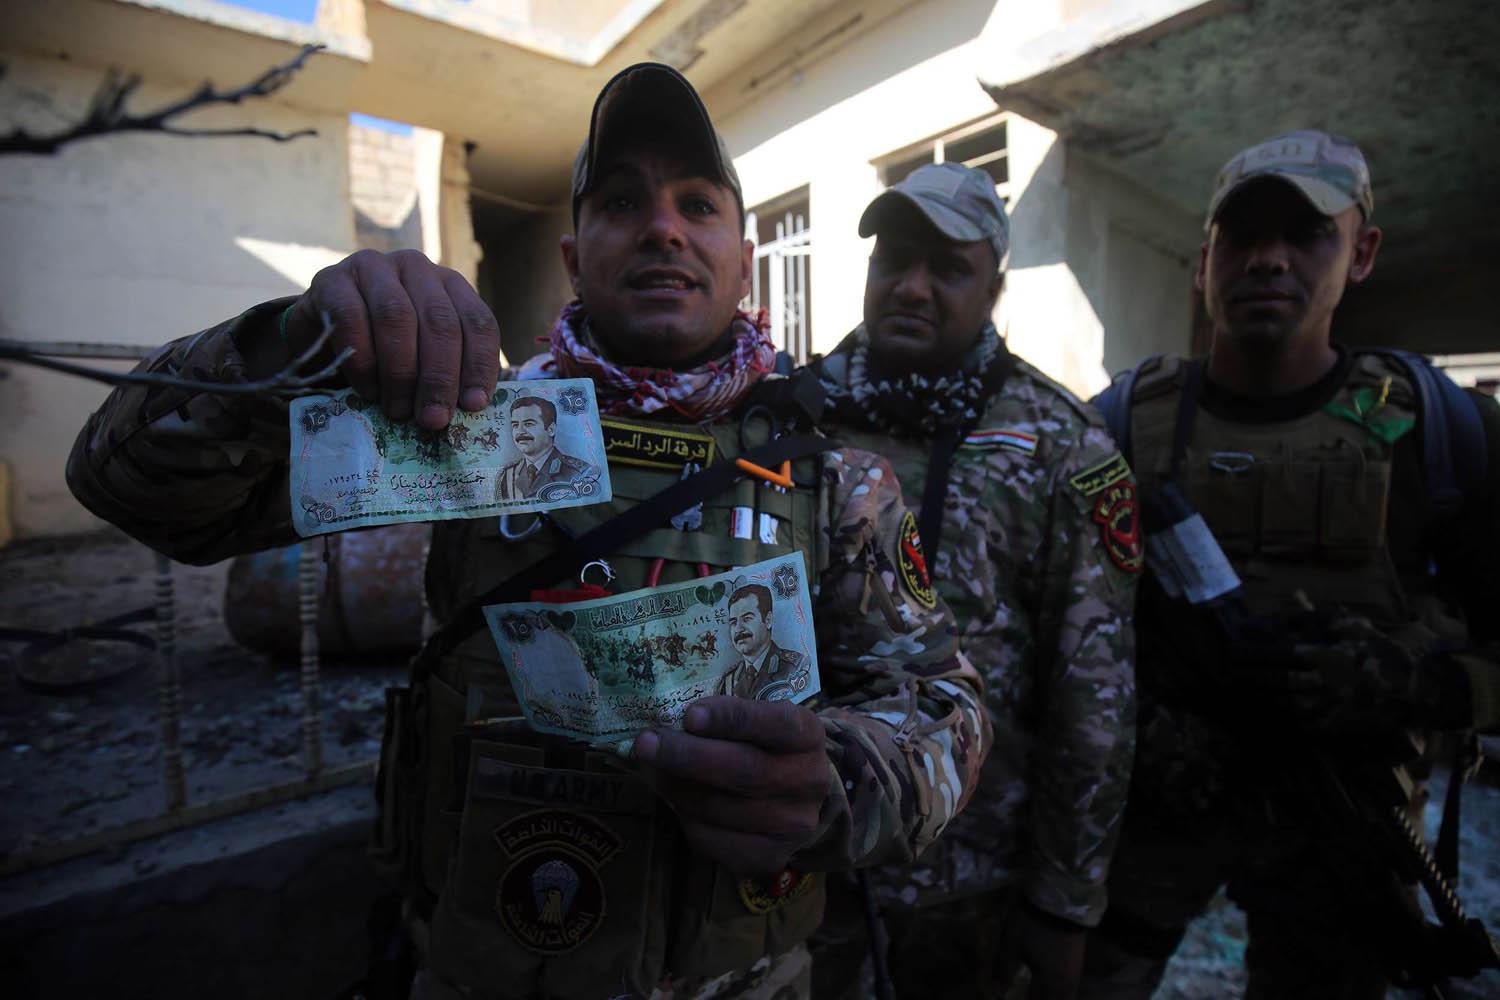 جنود عراقيون يعرضون عملة عراقية تحمل صورة الرئيس العراقي الراحل صدام حسين في قرية بالقرب من الموصل